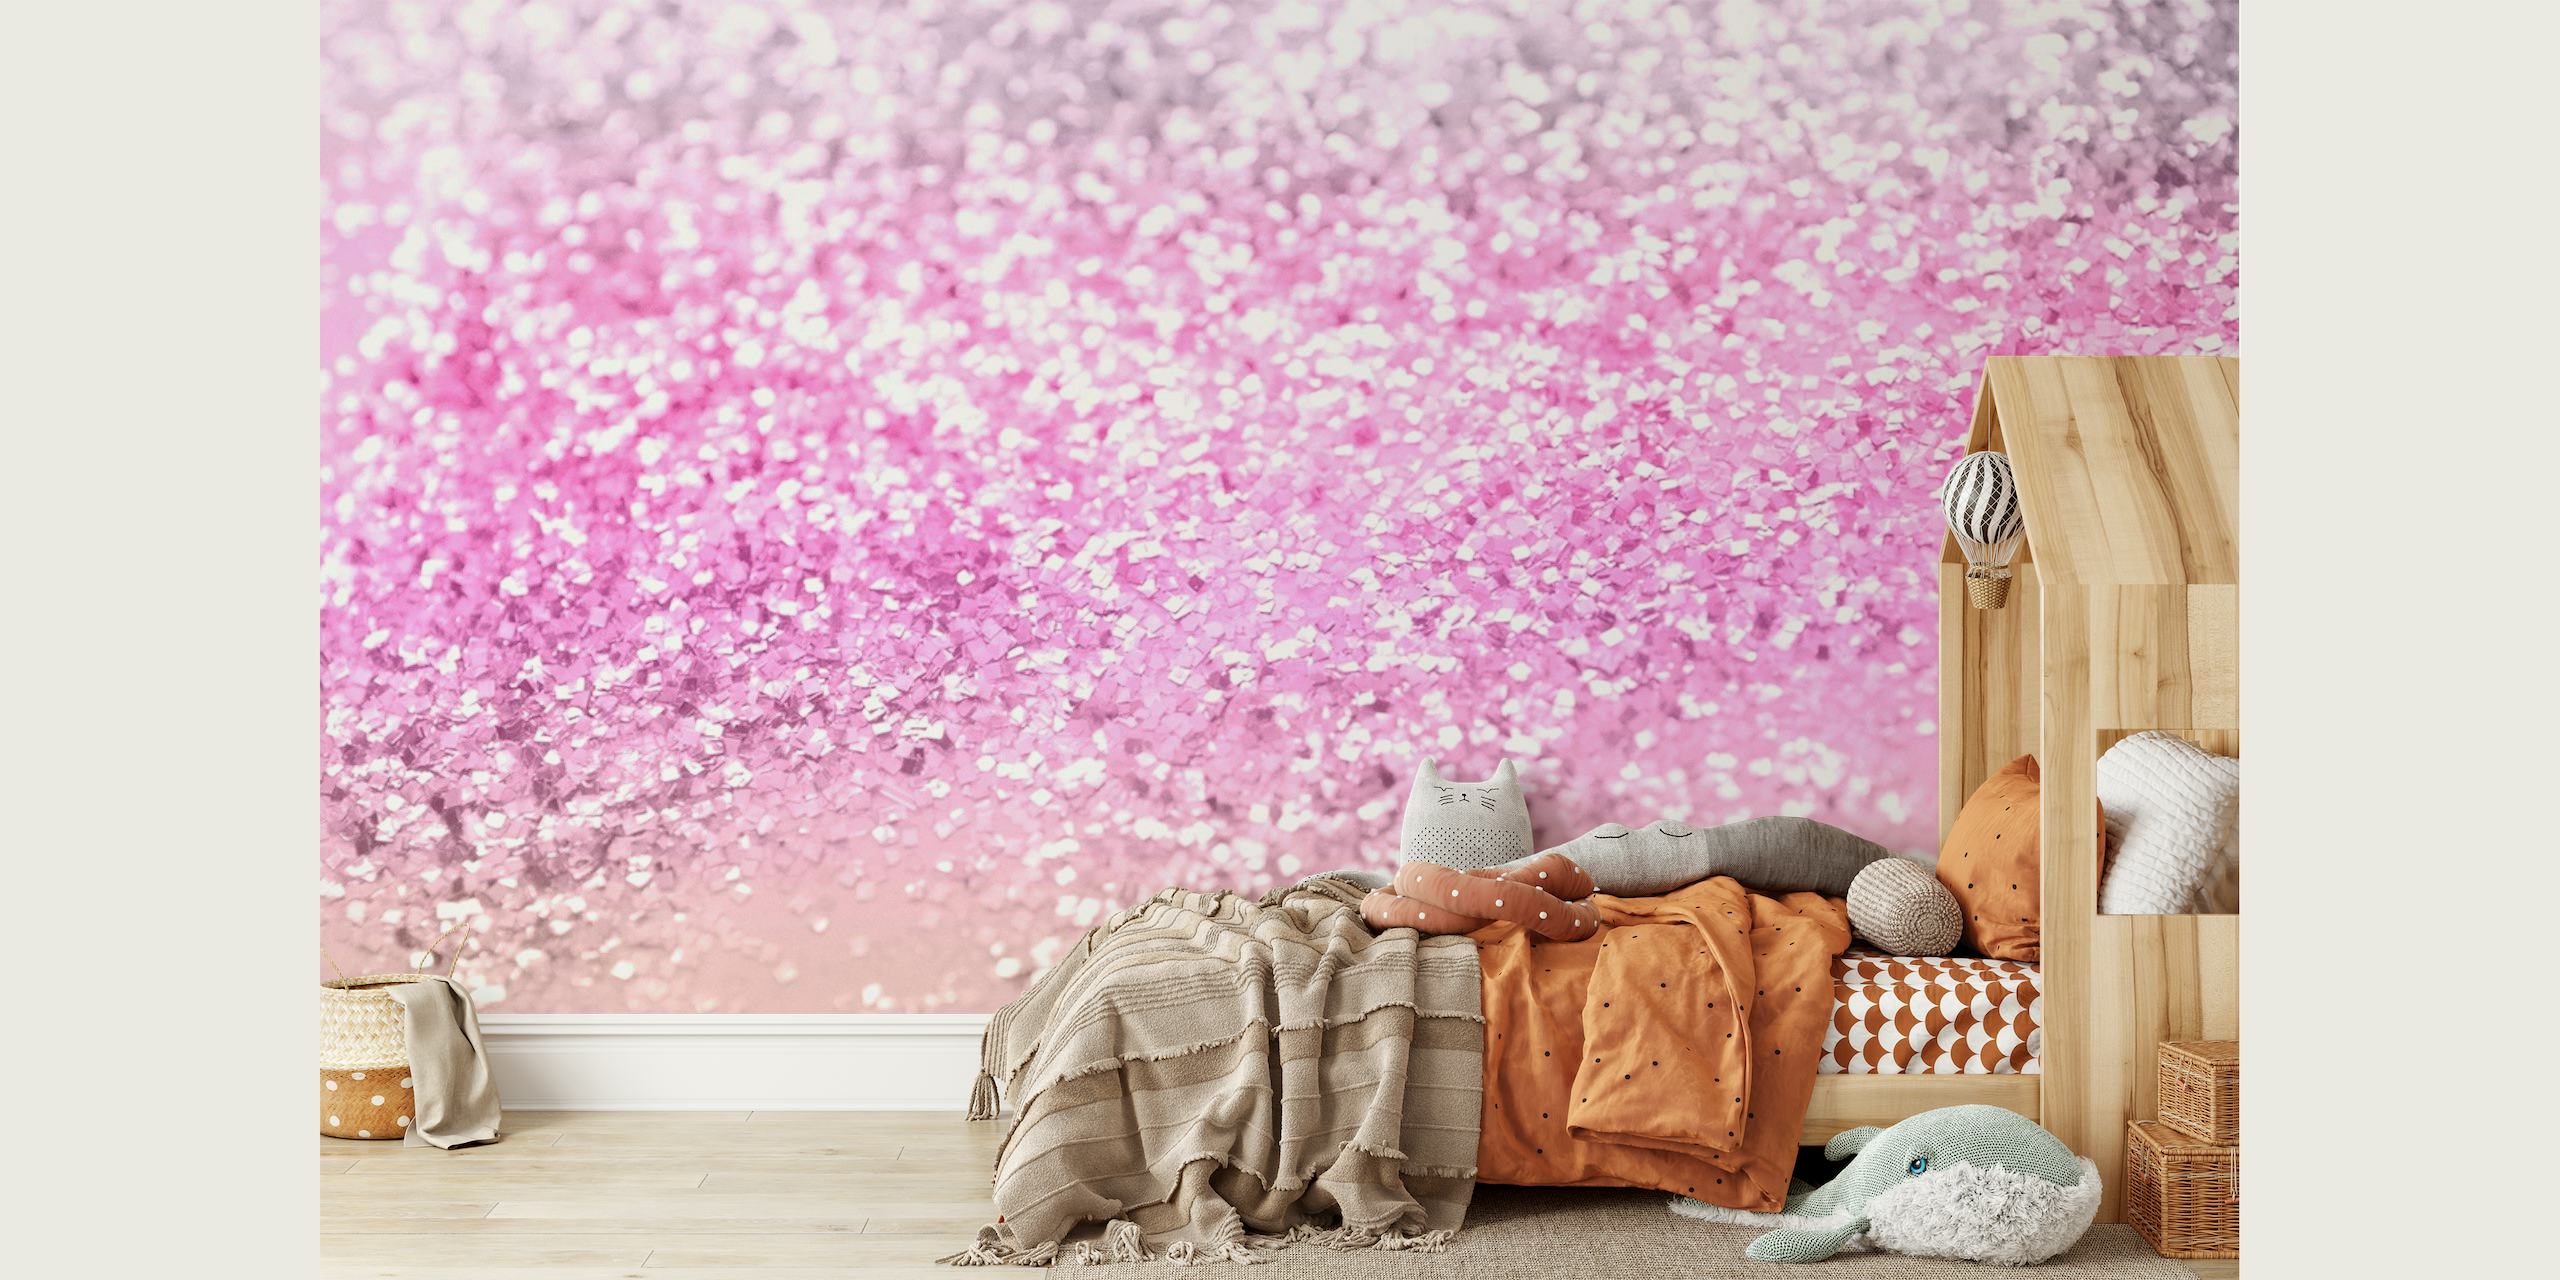 Fototapeta s třpytivým přechodem v růžové a stříbrné barvě pro kouzelné téma místnosti